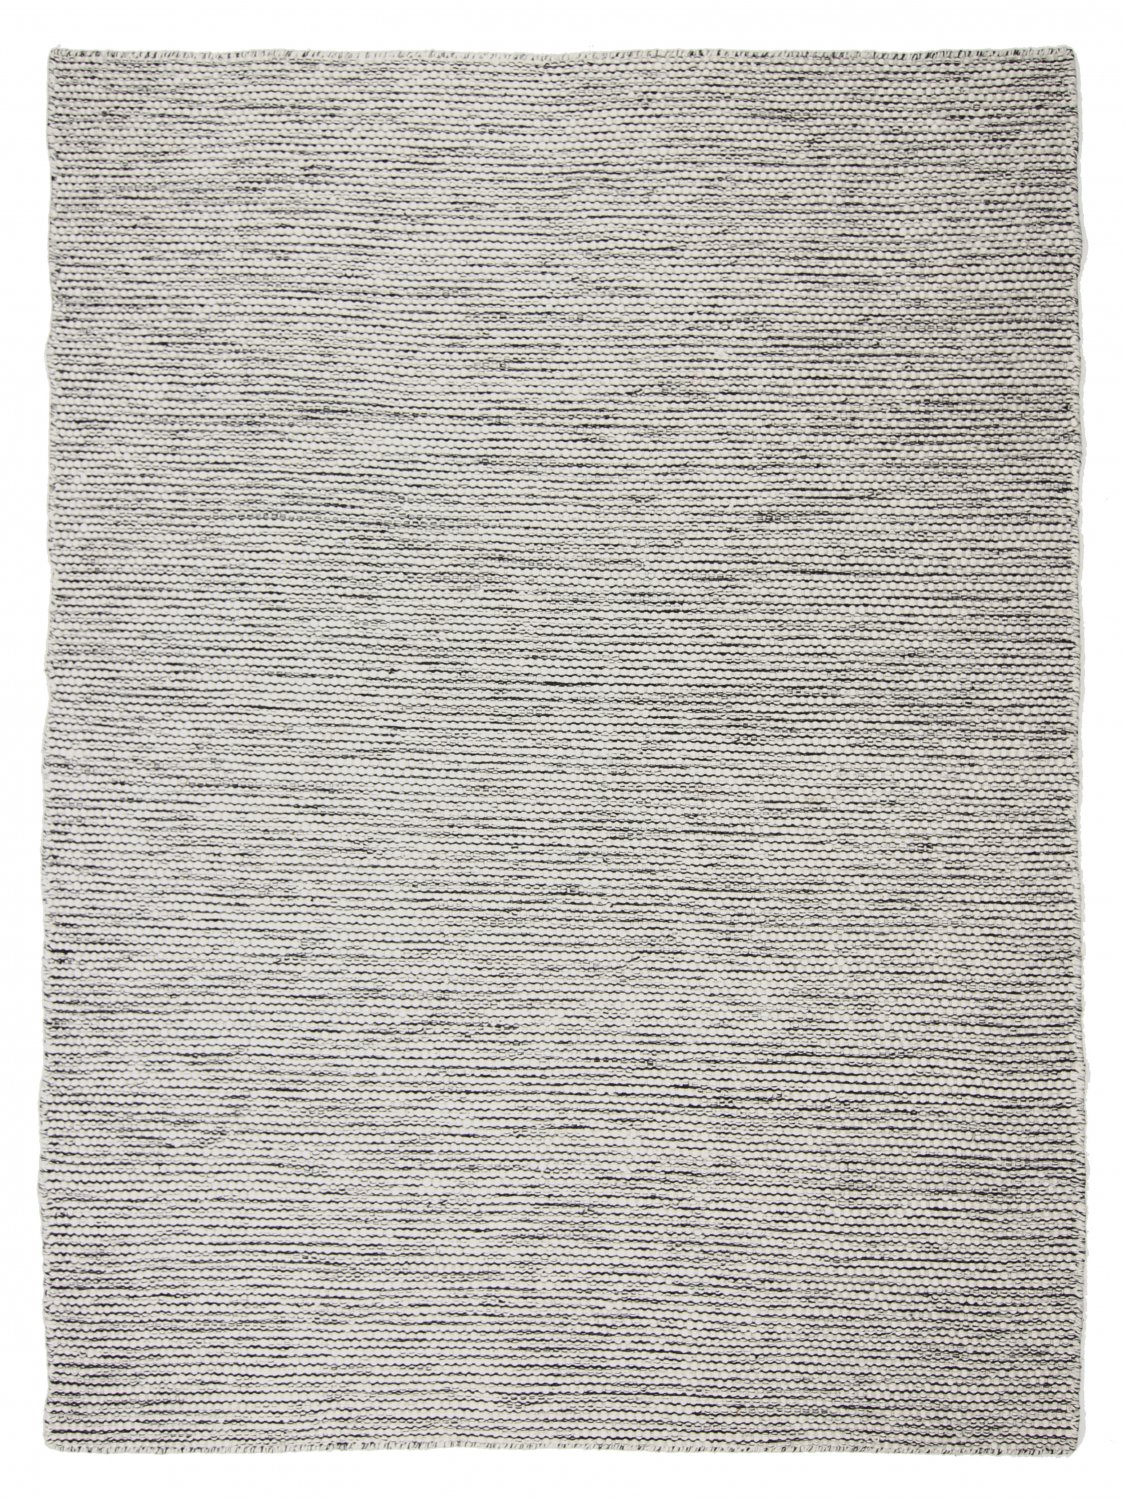 Wool rug - Otago (grey/black)